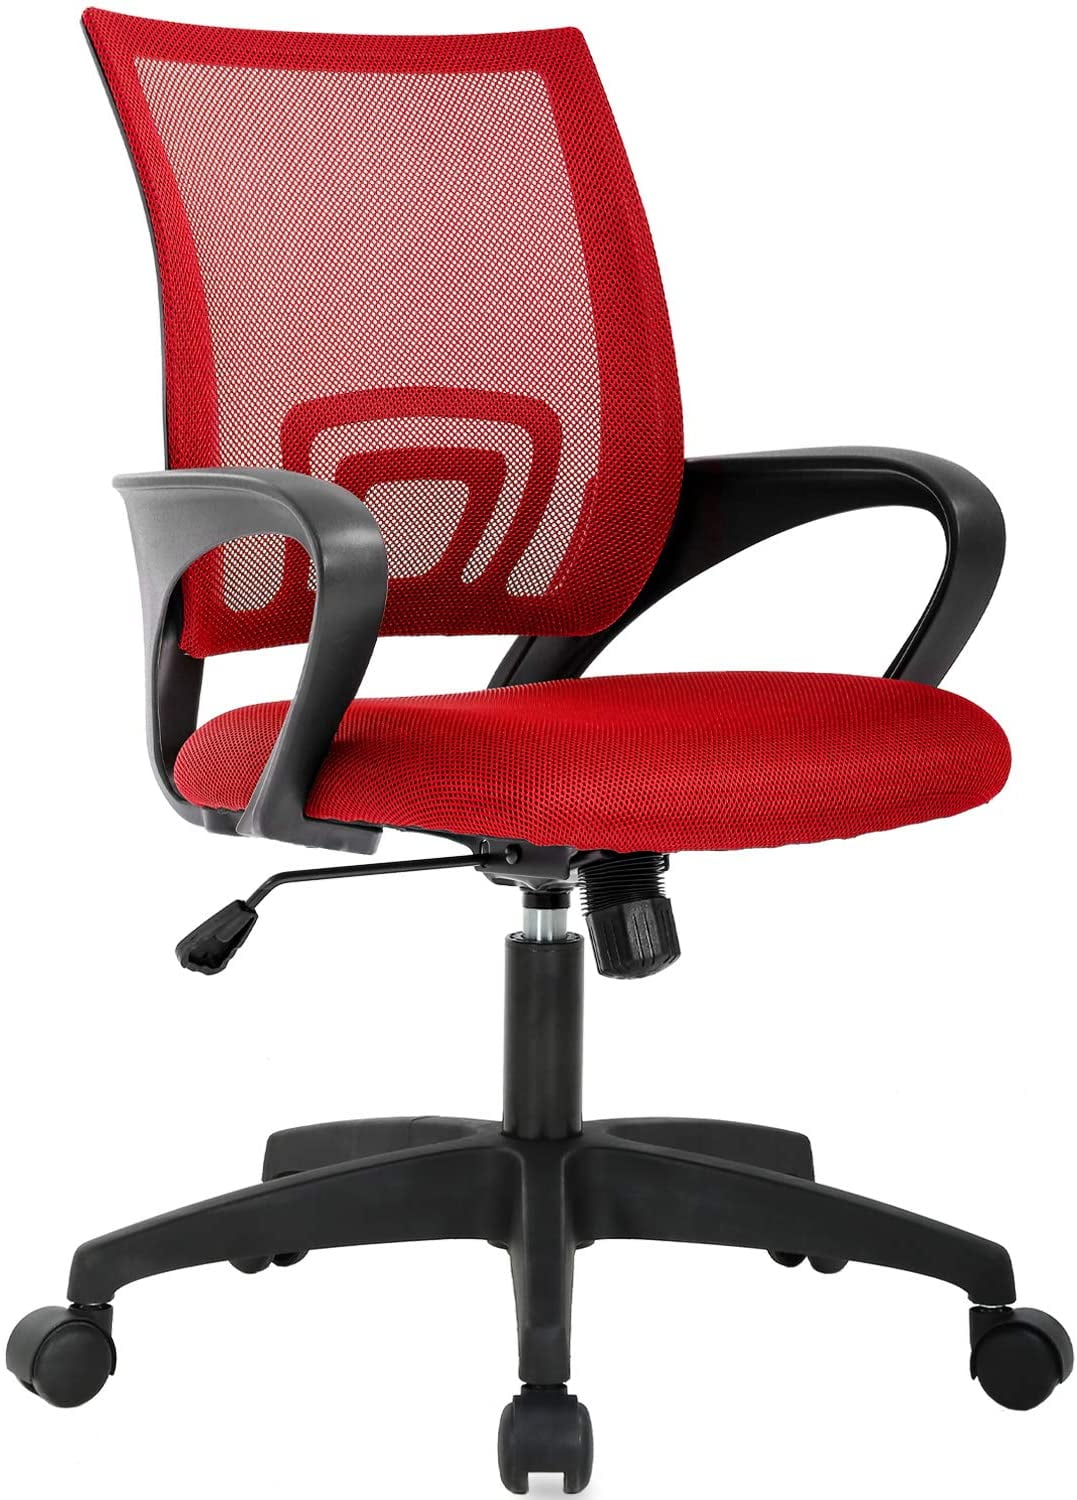 Office chair Ergonomic Desk Chair Mesh Computer Chair w/ Lumbar Support  Armrest 